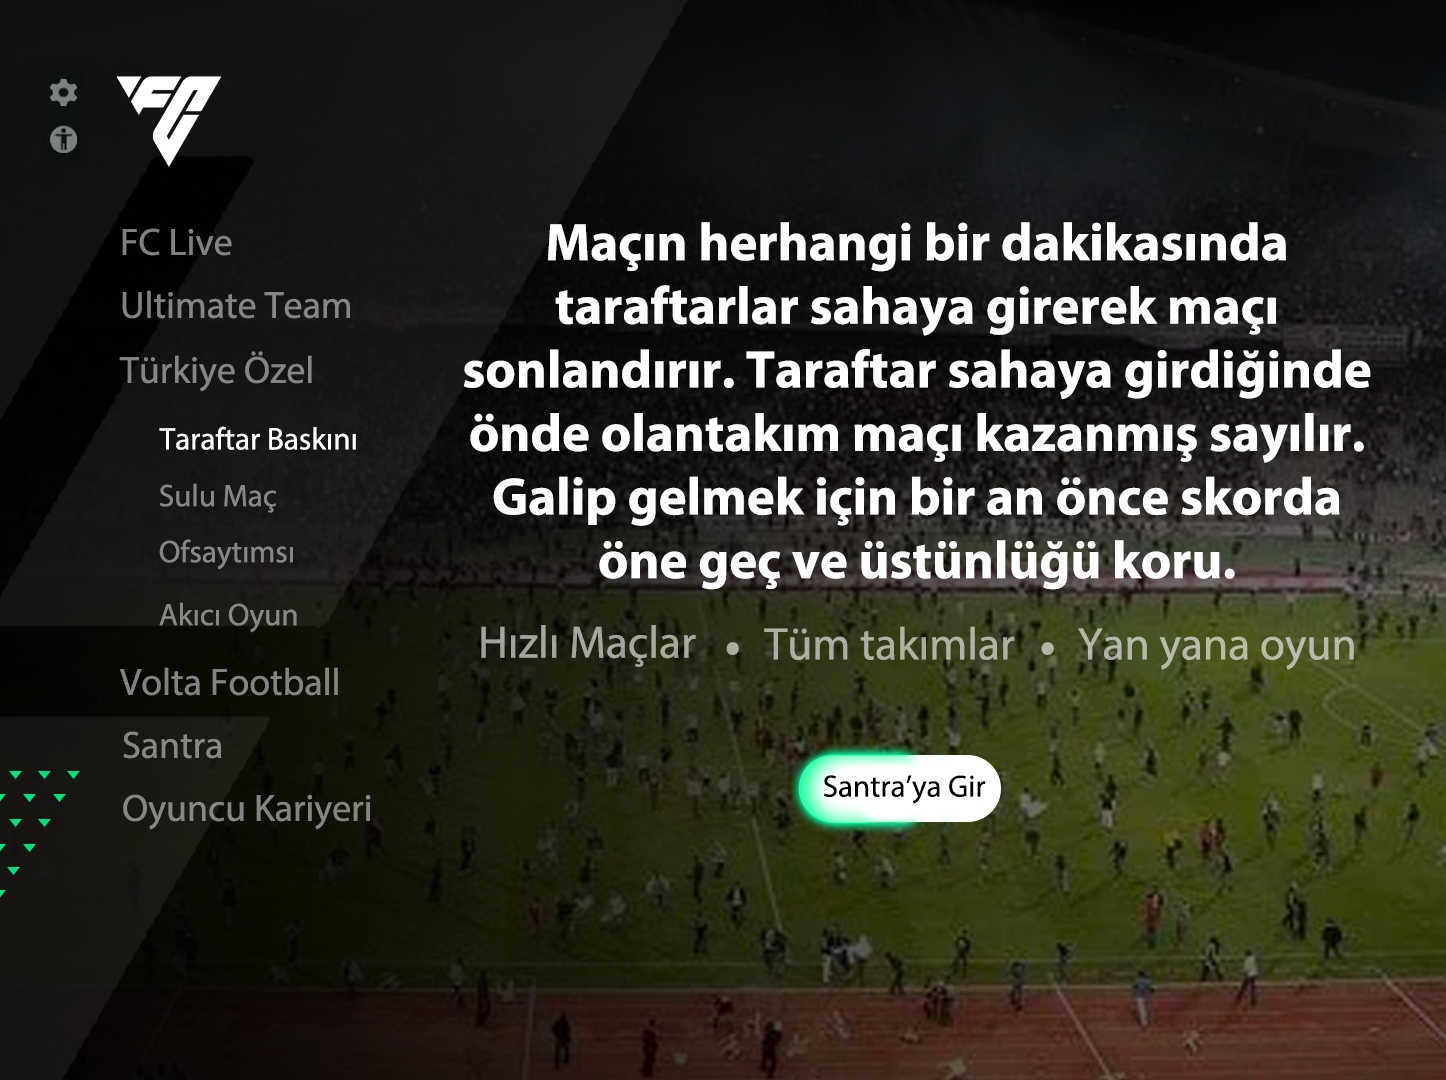 Ulaş Utku Bozdoğan: Böyle Lige Böyle Oyun: FC 24'te Türk Futboluna Özel Modlar ve Taktikler Olsa Nasıl Olurdu? 29